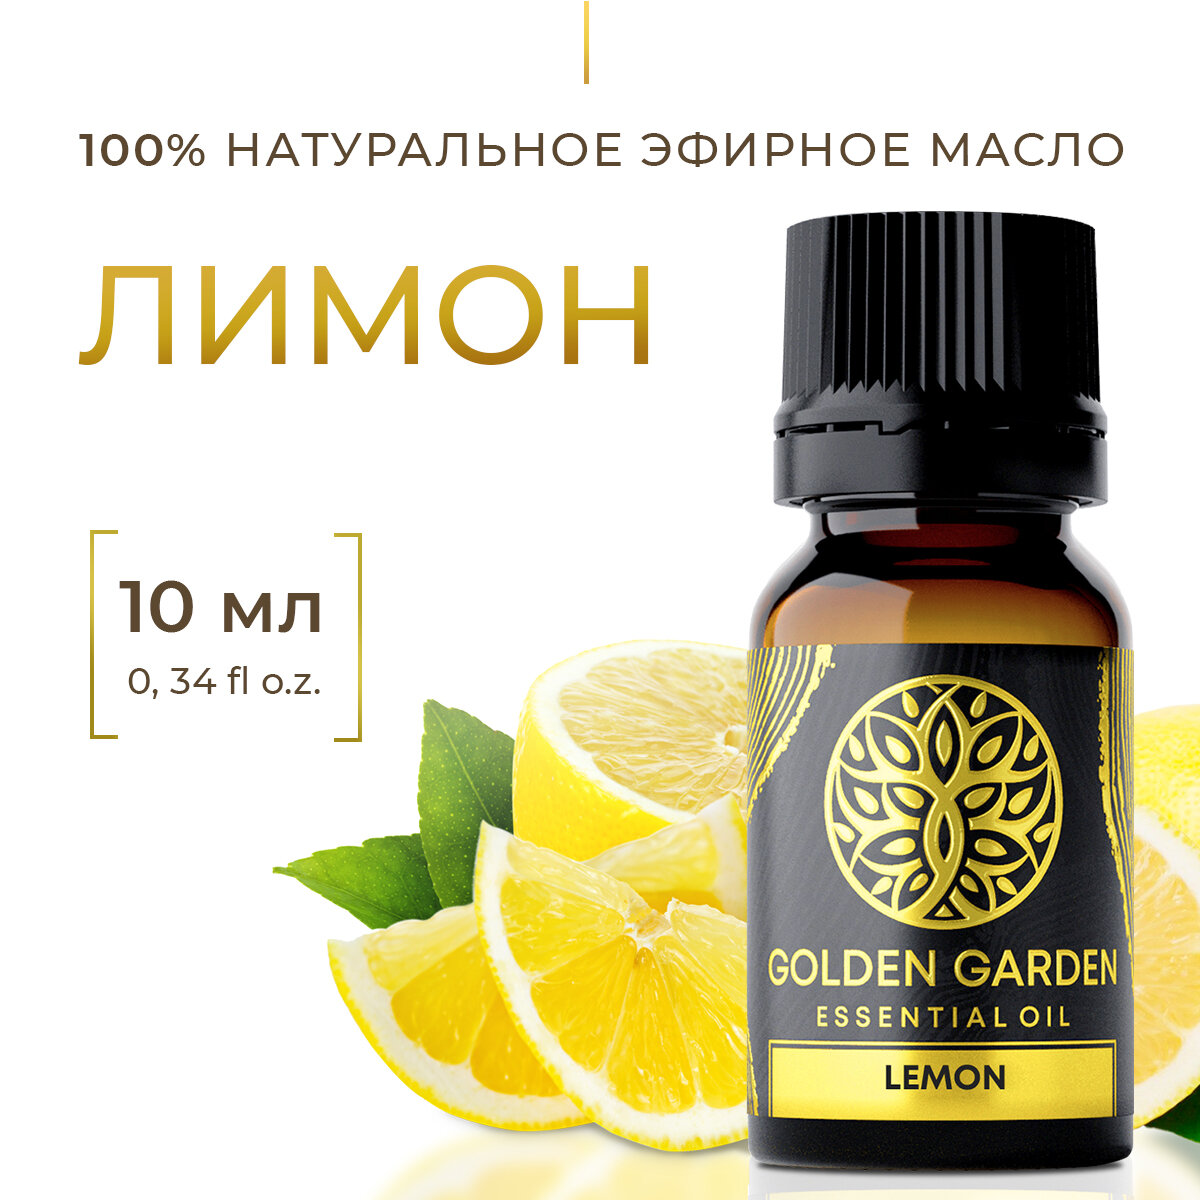 Натуральное эфирное масло лимон 10мл Golden Garden для ароматерапии диффузора бани и сауны